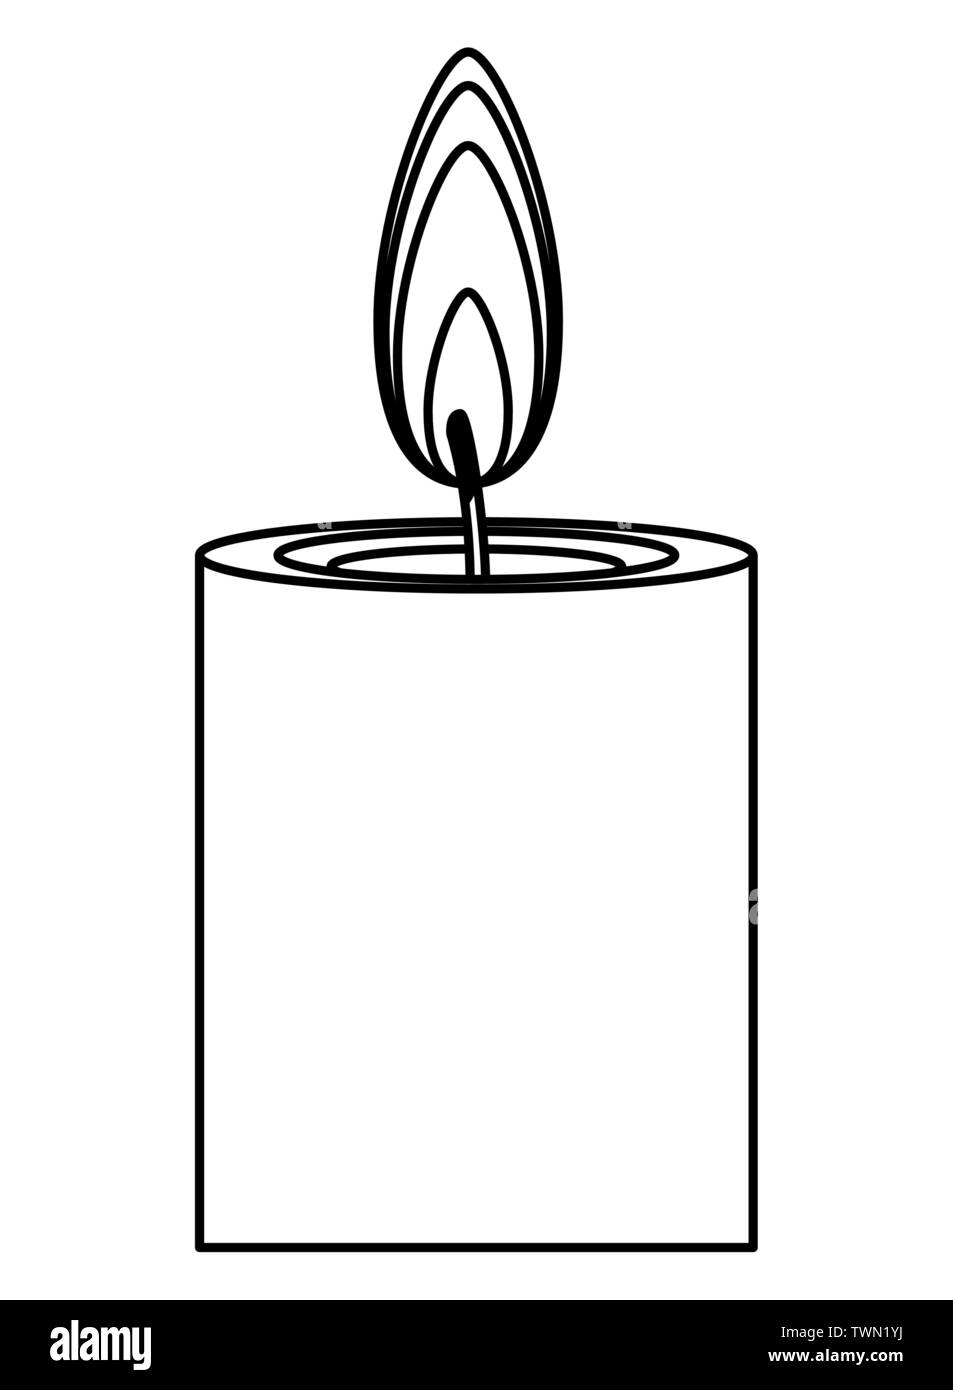 Plain White Candles /velas Blancas Simples 